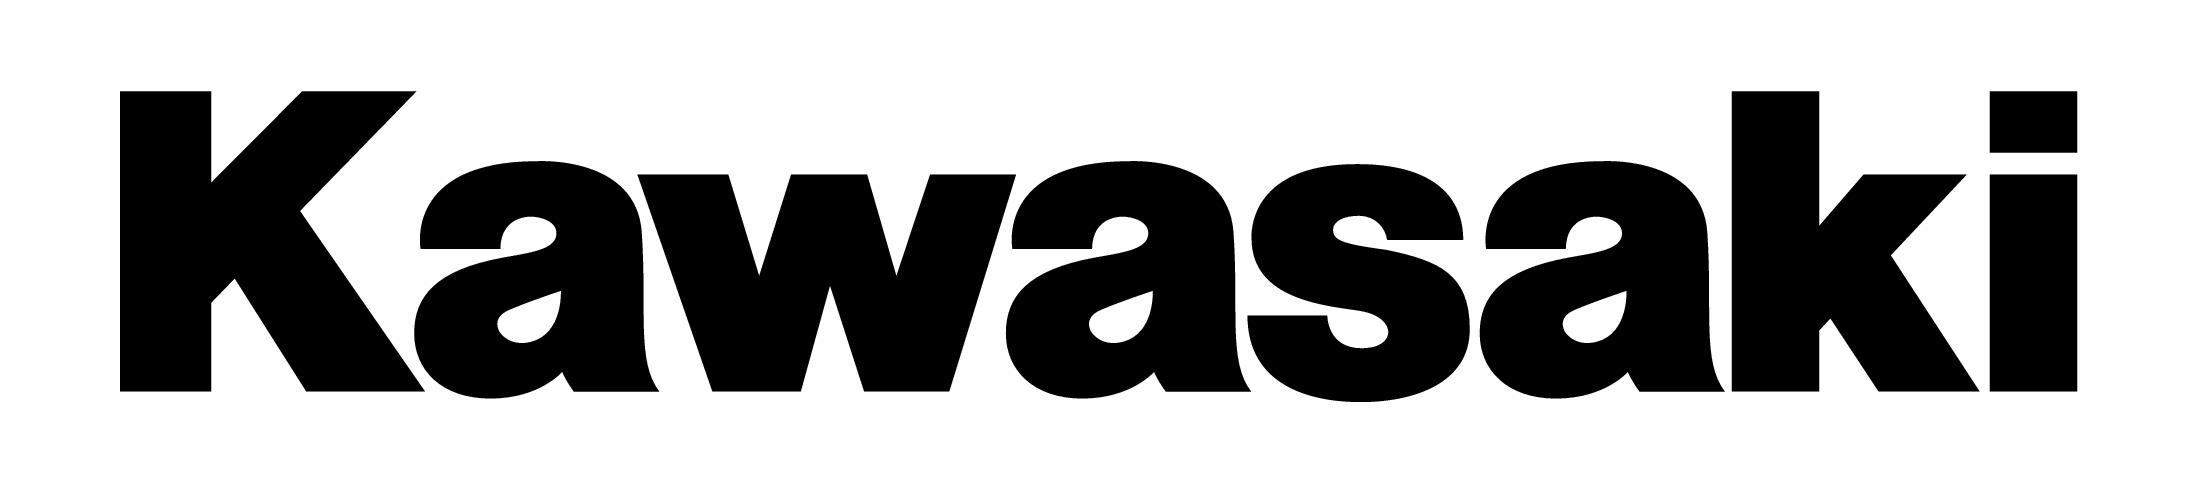 Kawasaki logo on white background